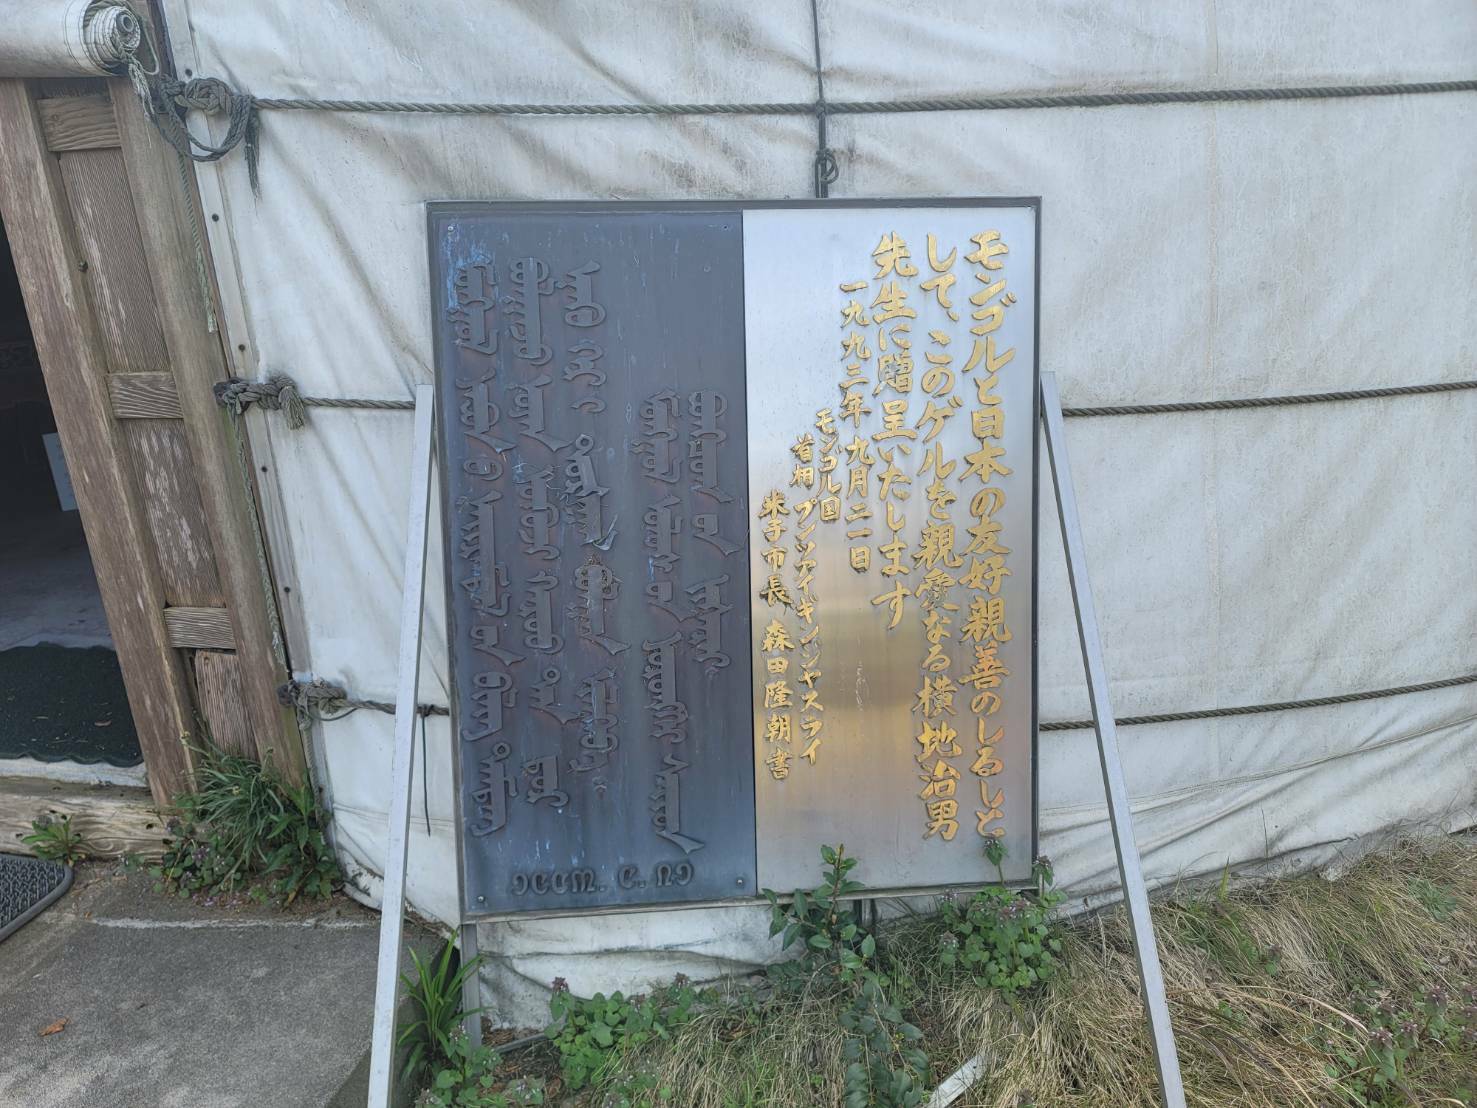 鳥取県にあるアジア博物館井上靖記念館の庭に設置されている「ゲル」横の看板の写真です。